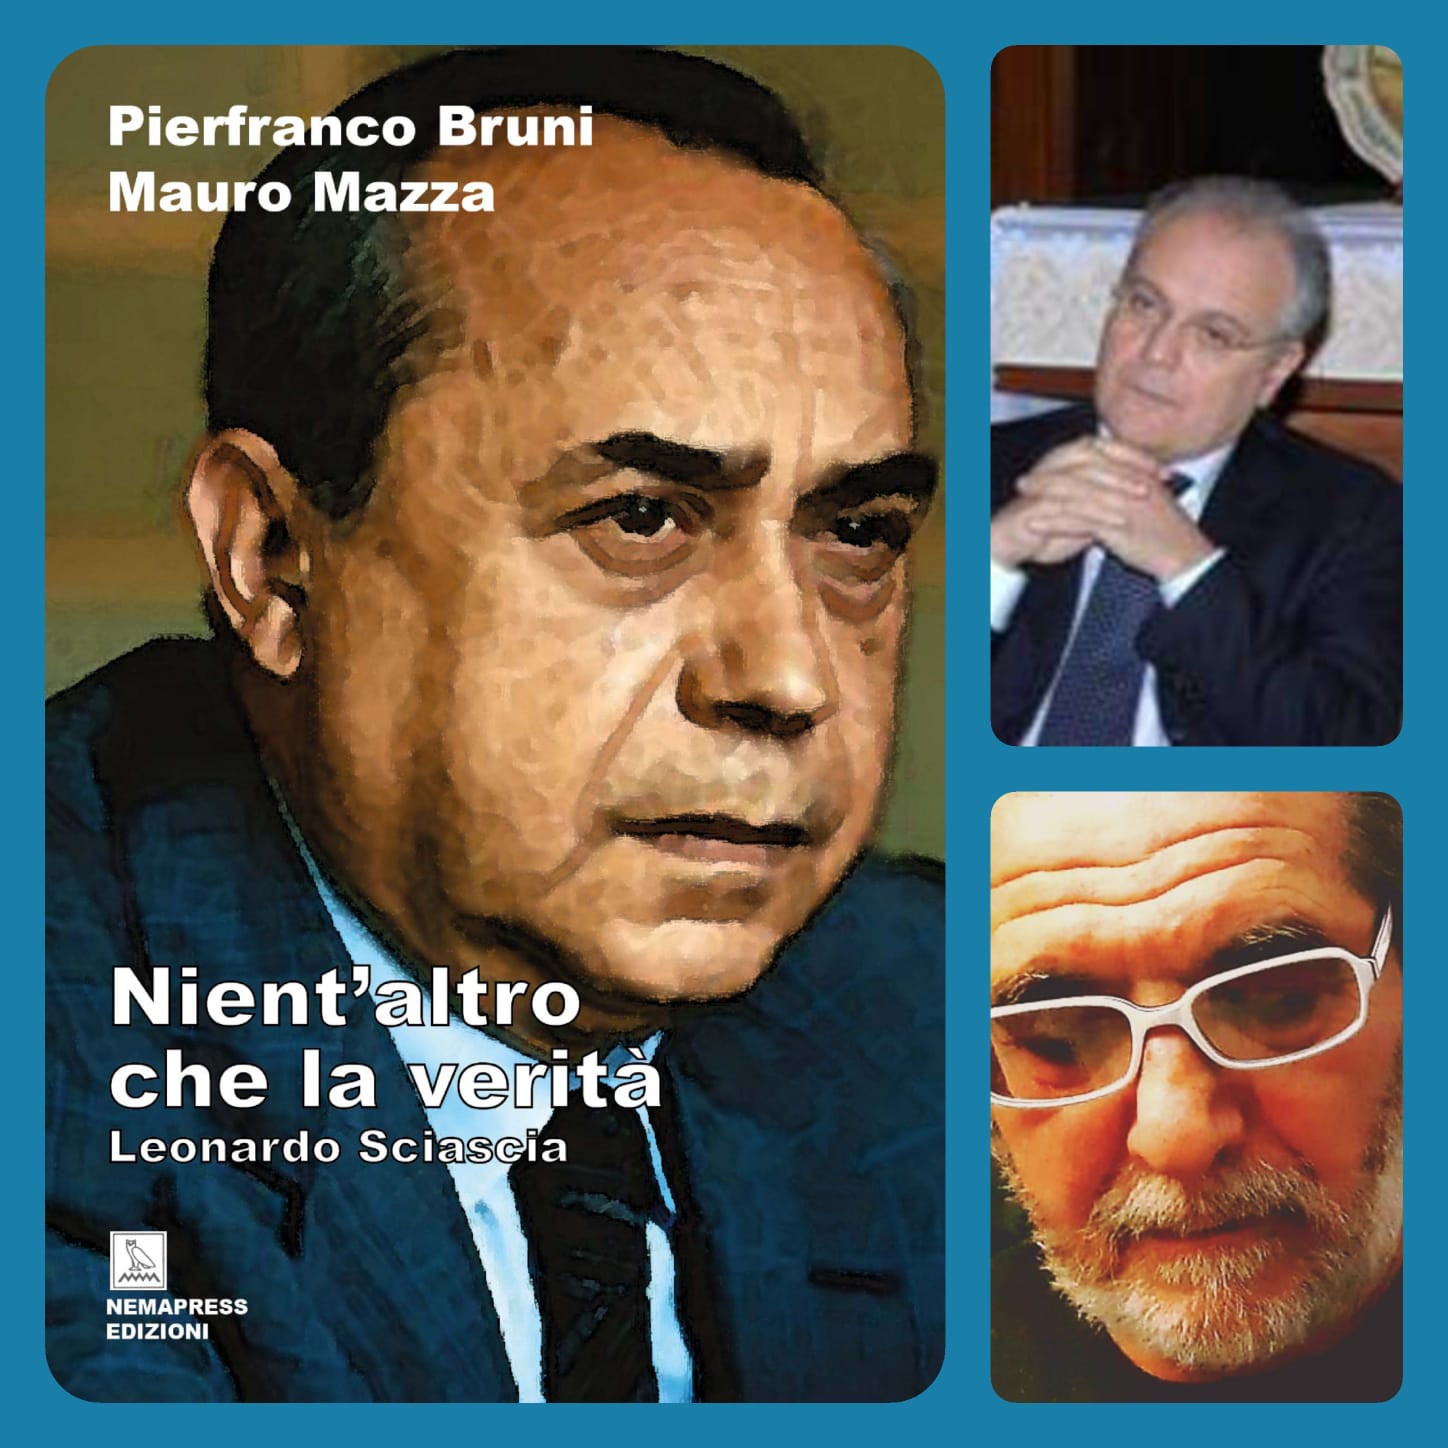 "Nient'altro che la verità" su Leonardo Sciascia nel Centenario della nascita con un testo autorevole di Pierfranco Bruni e Mauro Mazza 